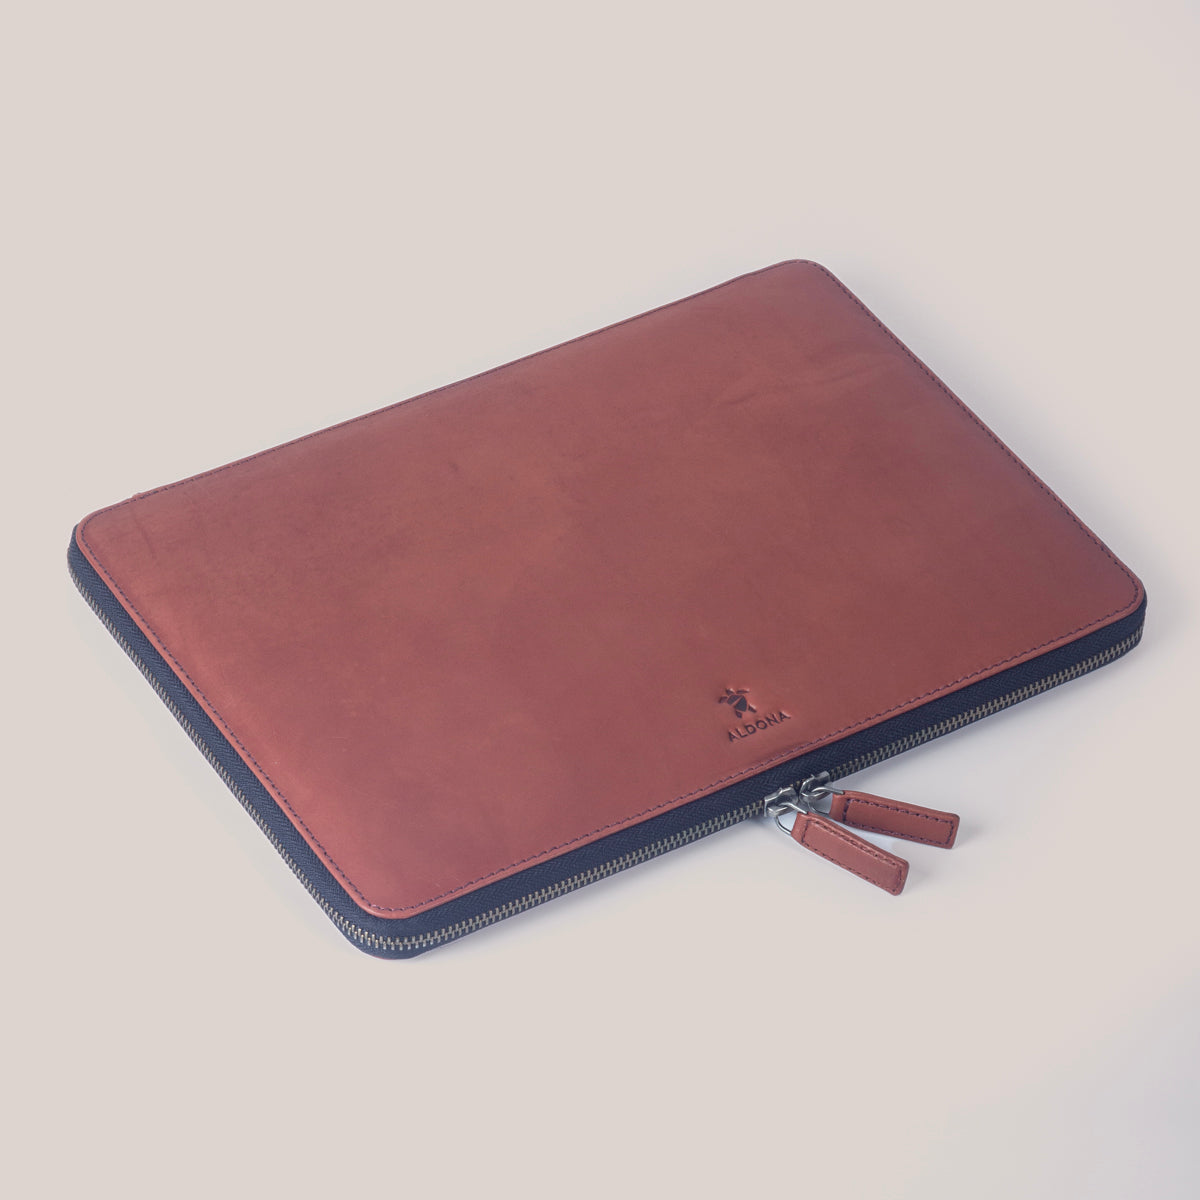 DELL XPS 13 Zippered Laptop Case - Cognac